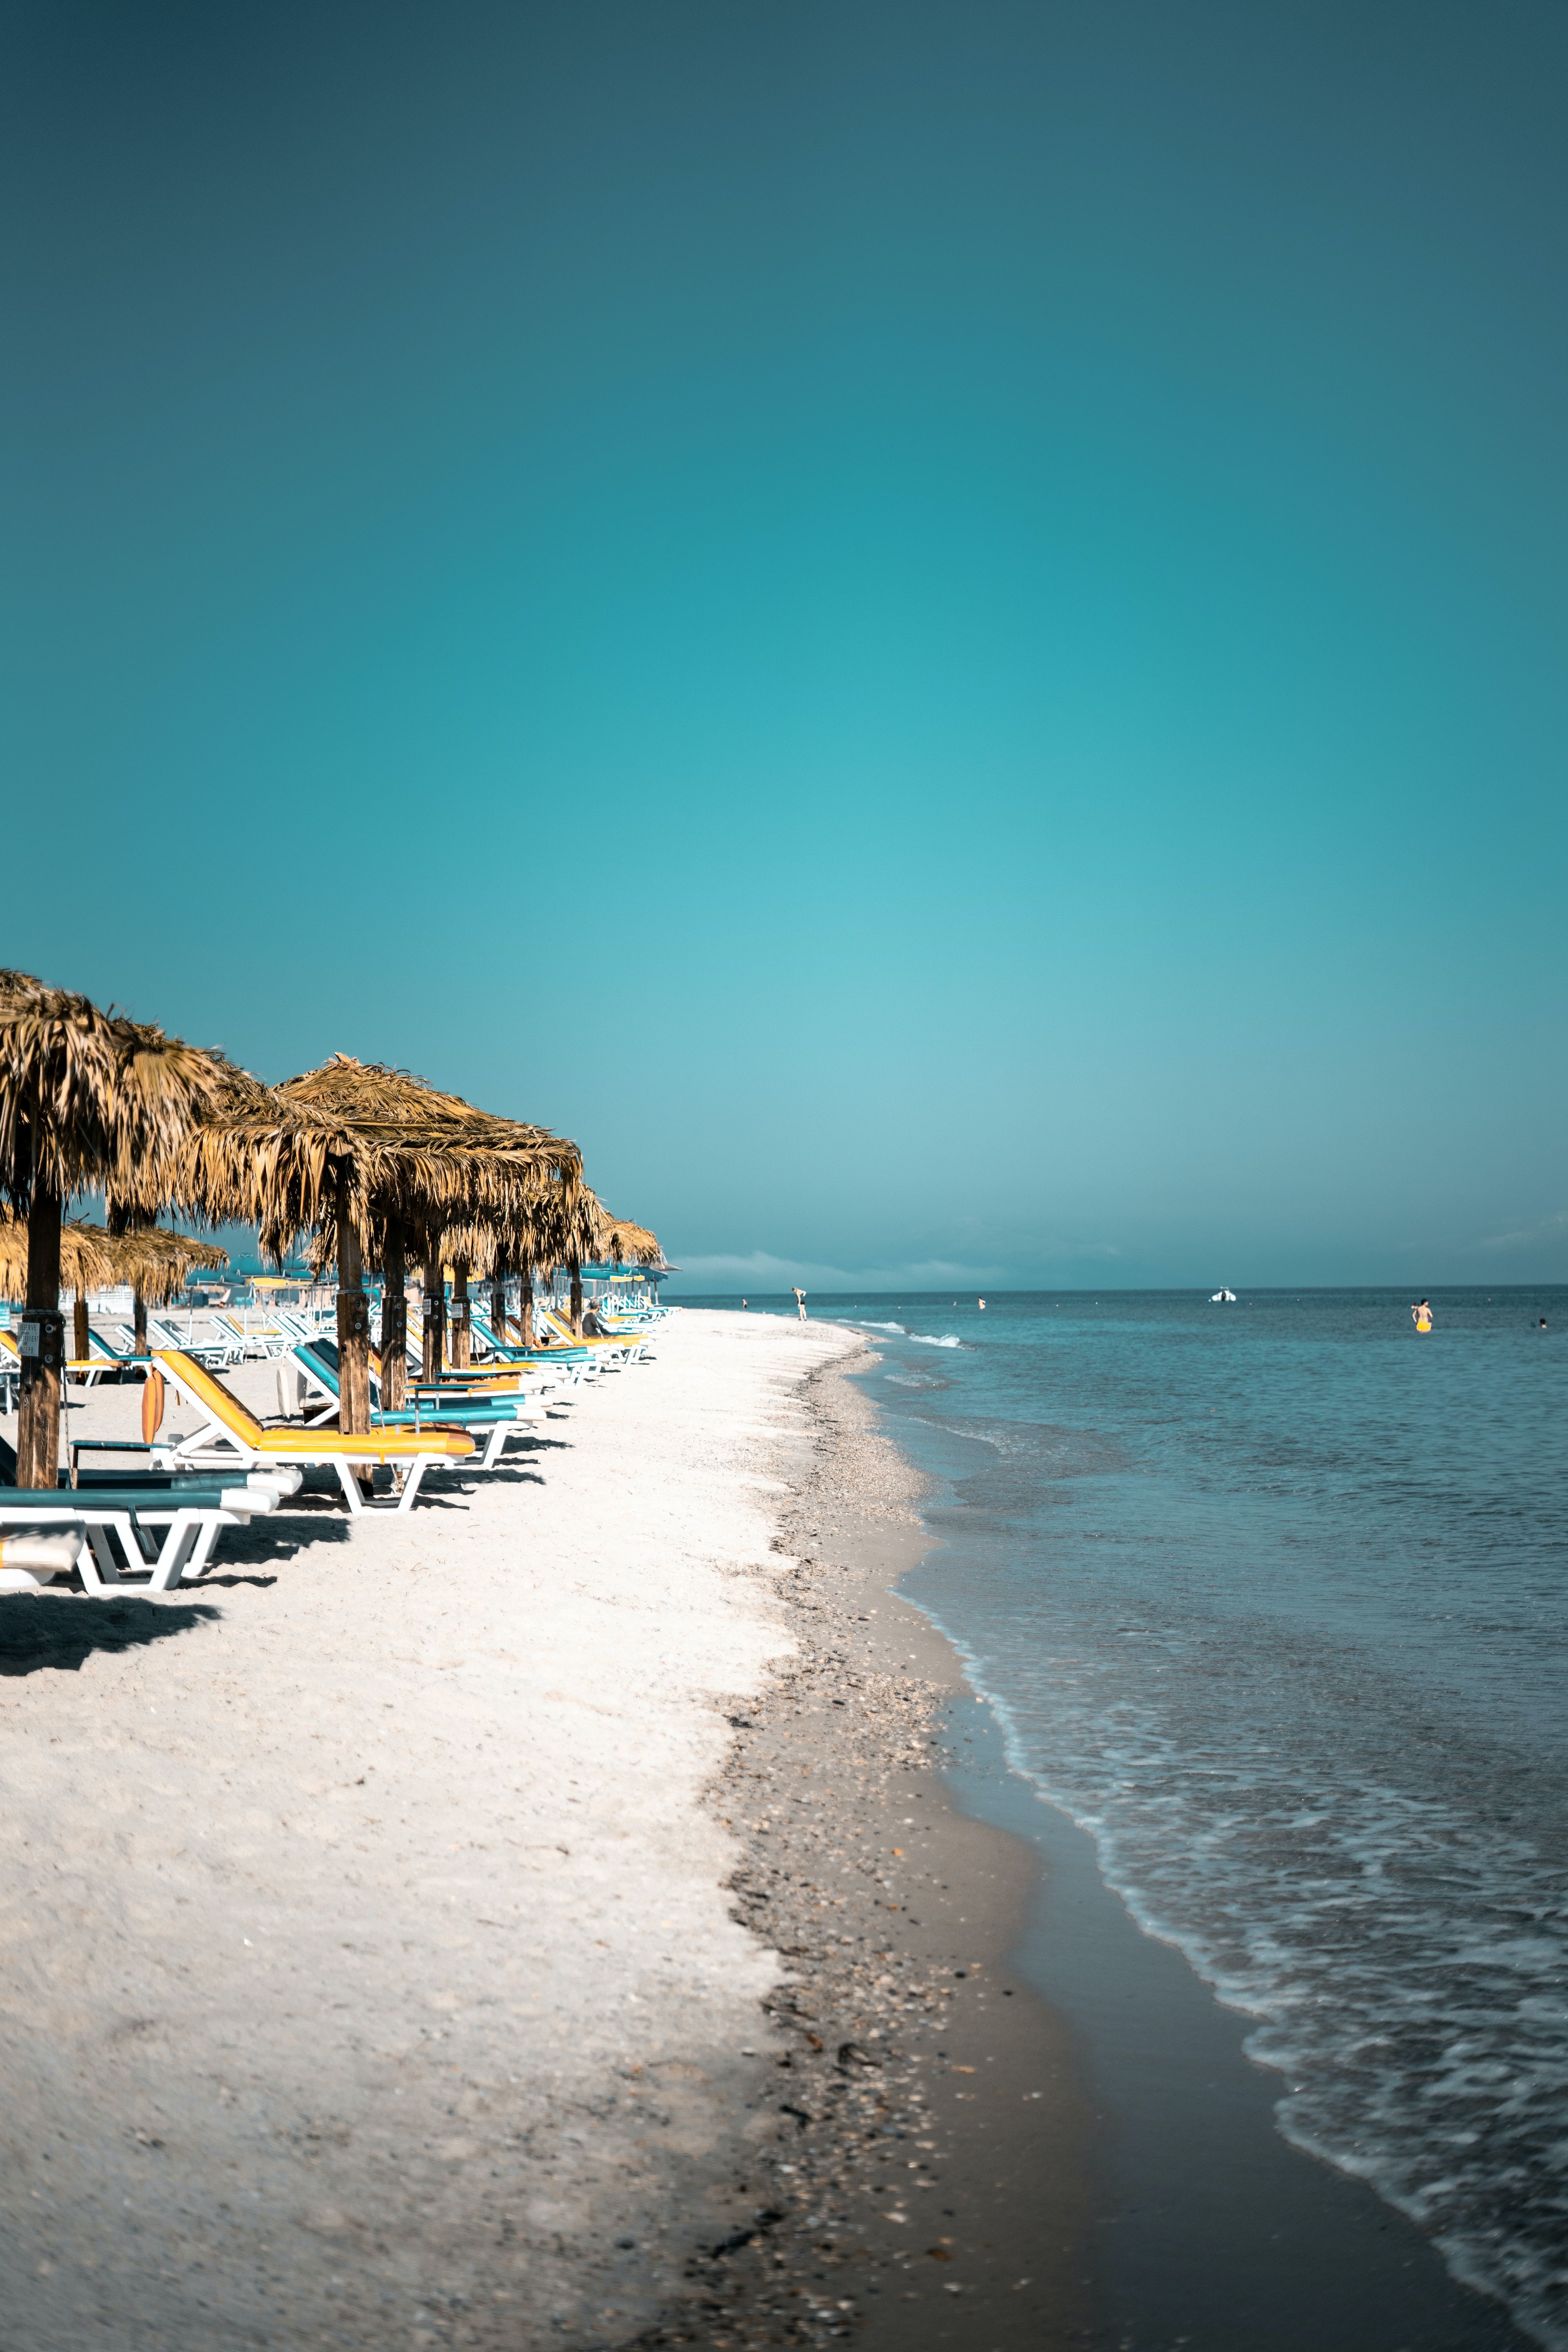 Psili Ammos é uma praia de areia branca que é uma Samos Staplelouis-droege-P5Sg-CJrXqs-unsplash